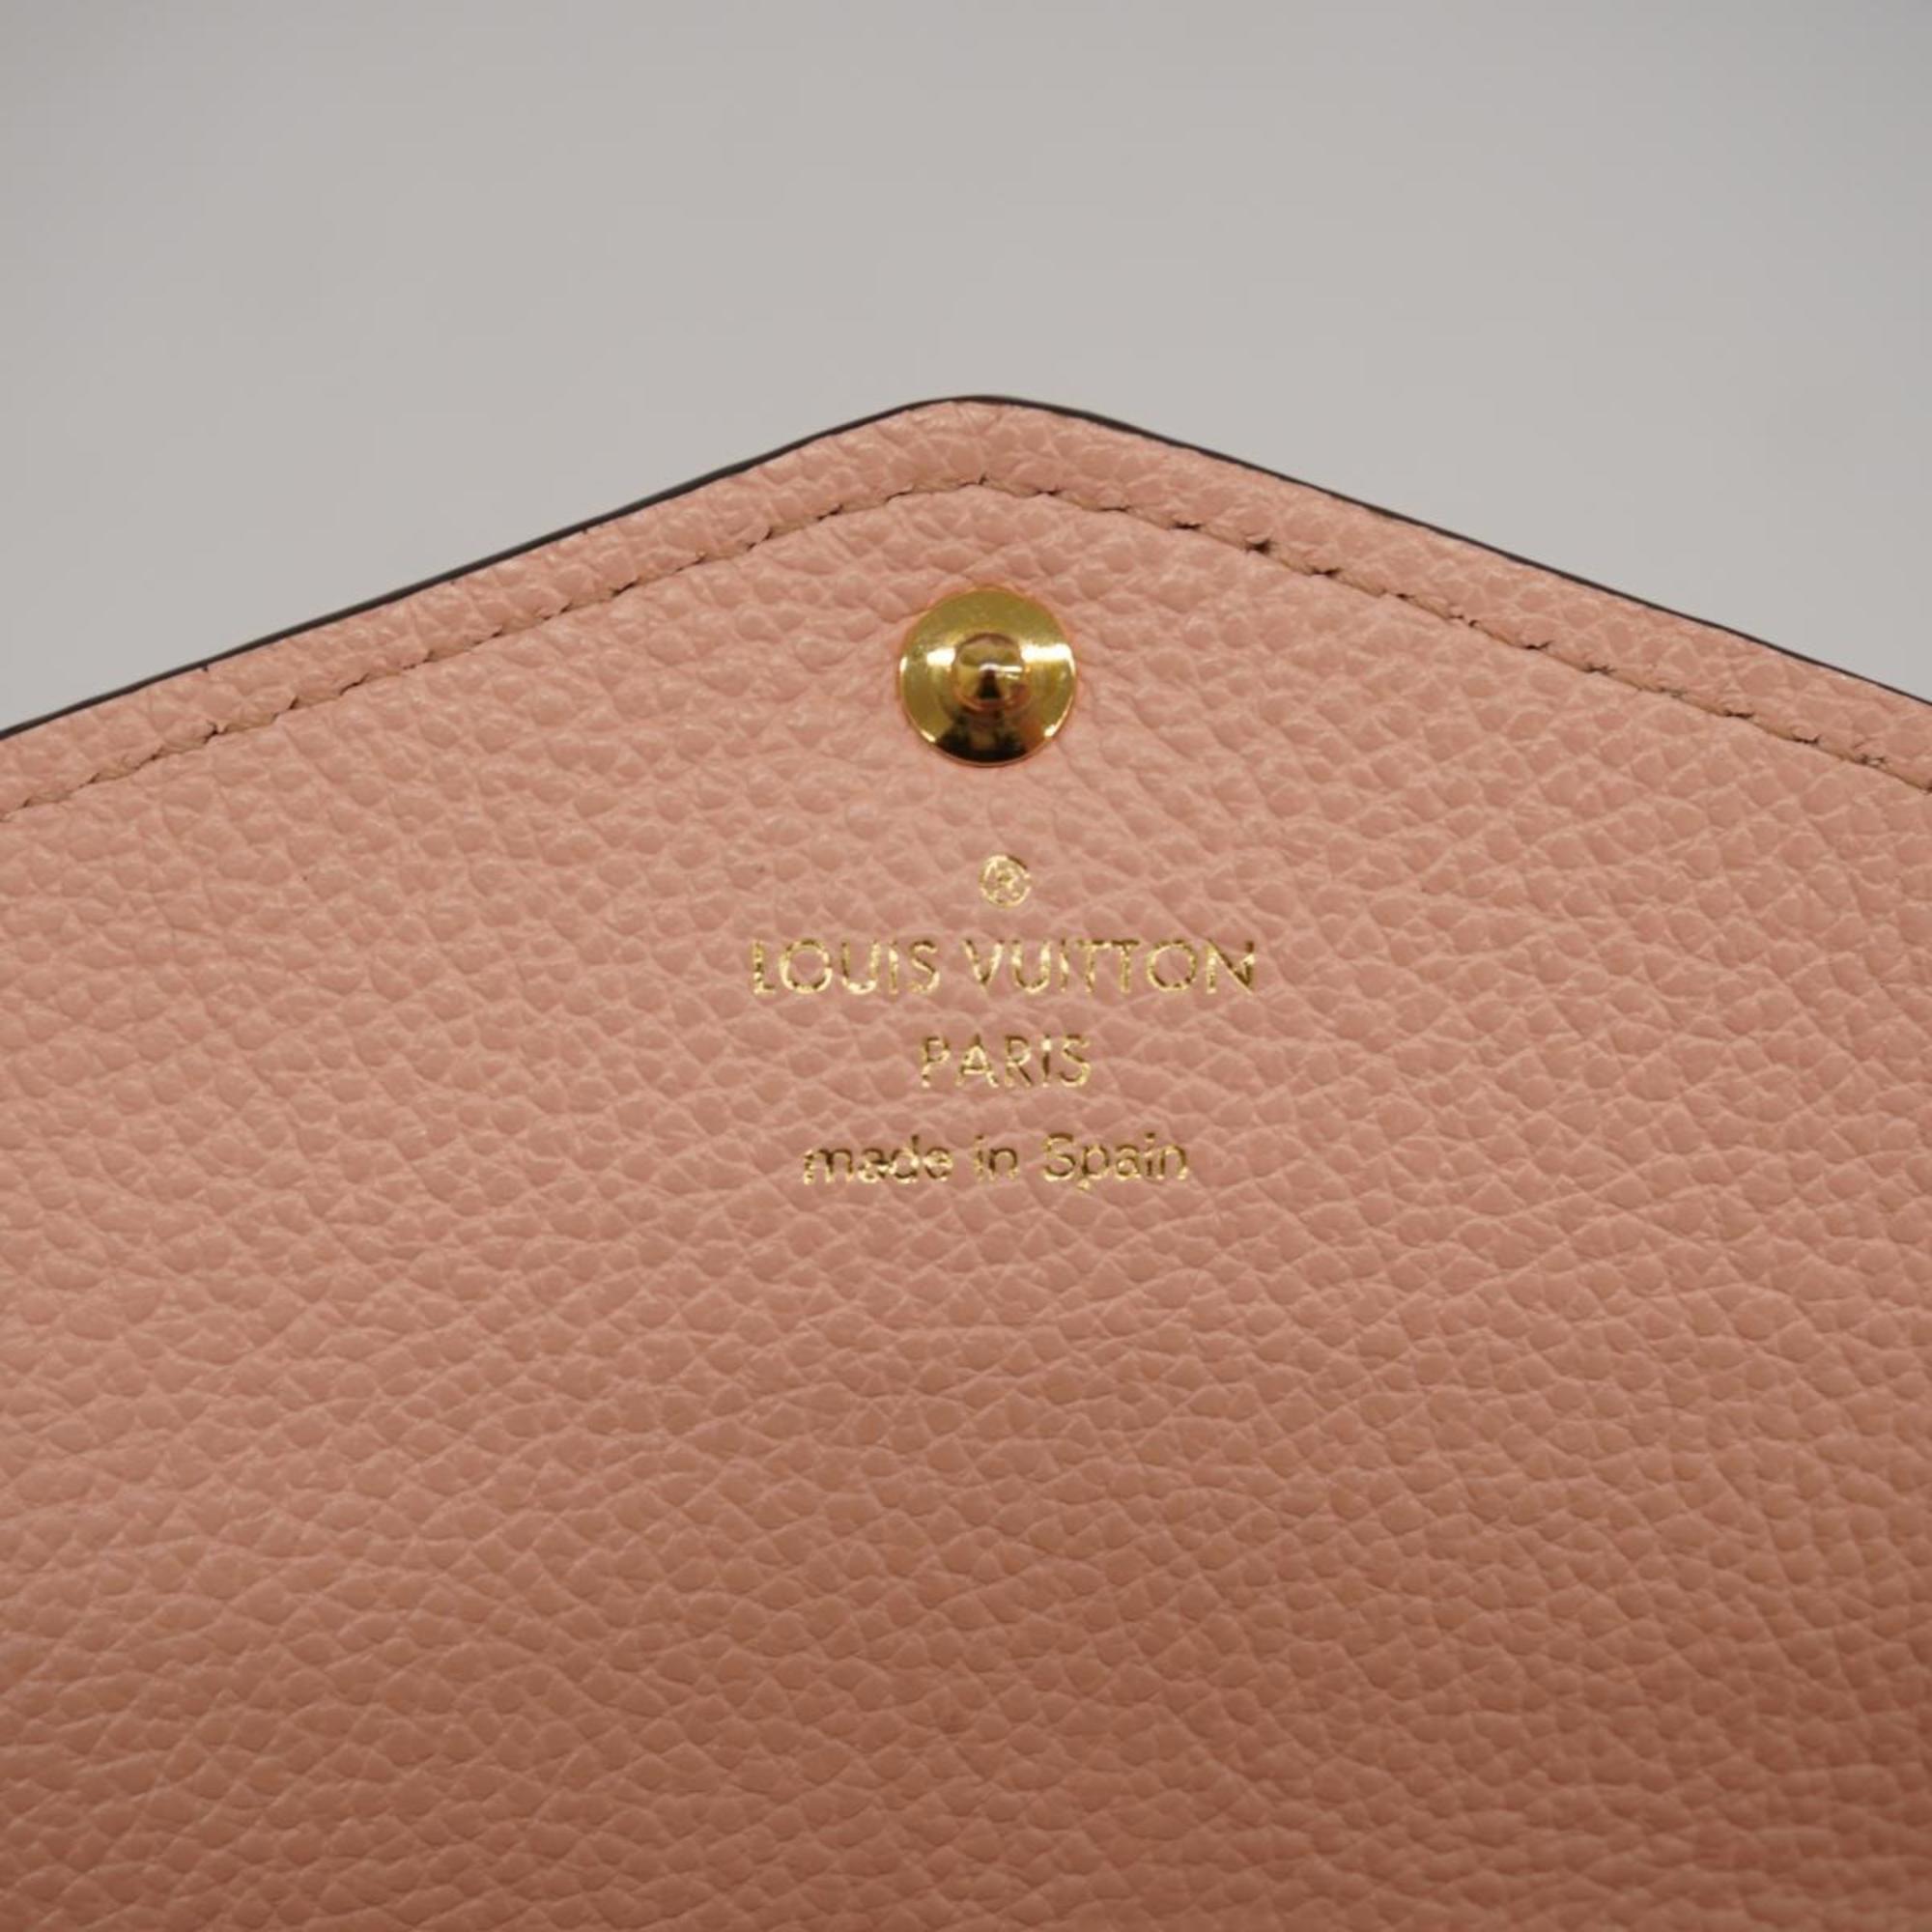 Louis Vuitton Long Wallet Monogram Empreinte Portefeuille Sarah M64082 Rose Poodle Ladies